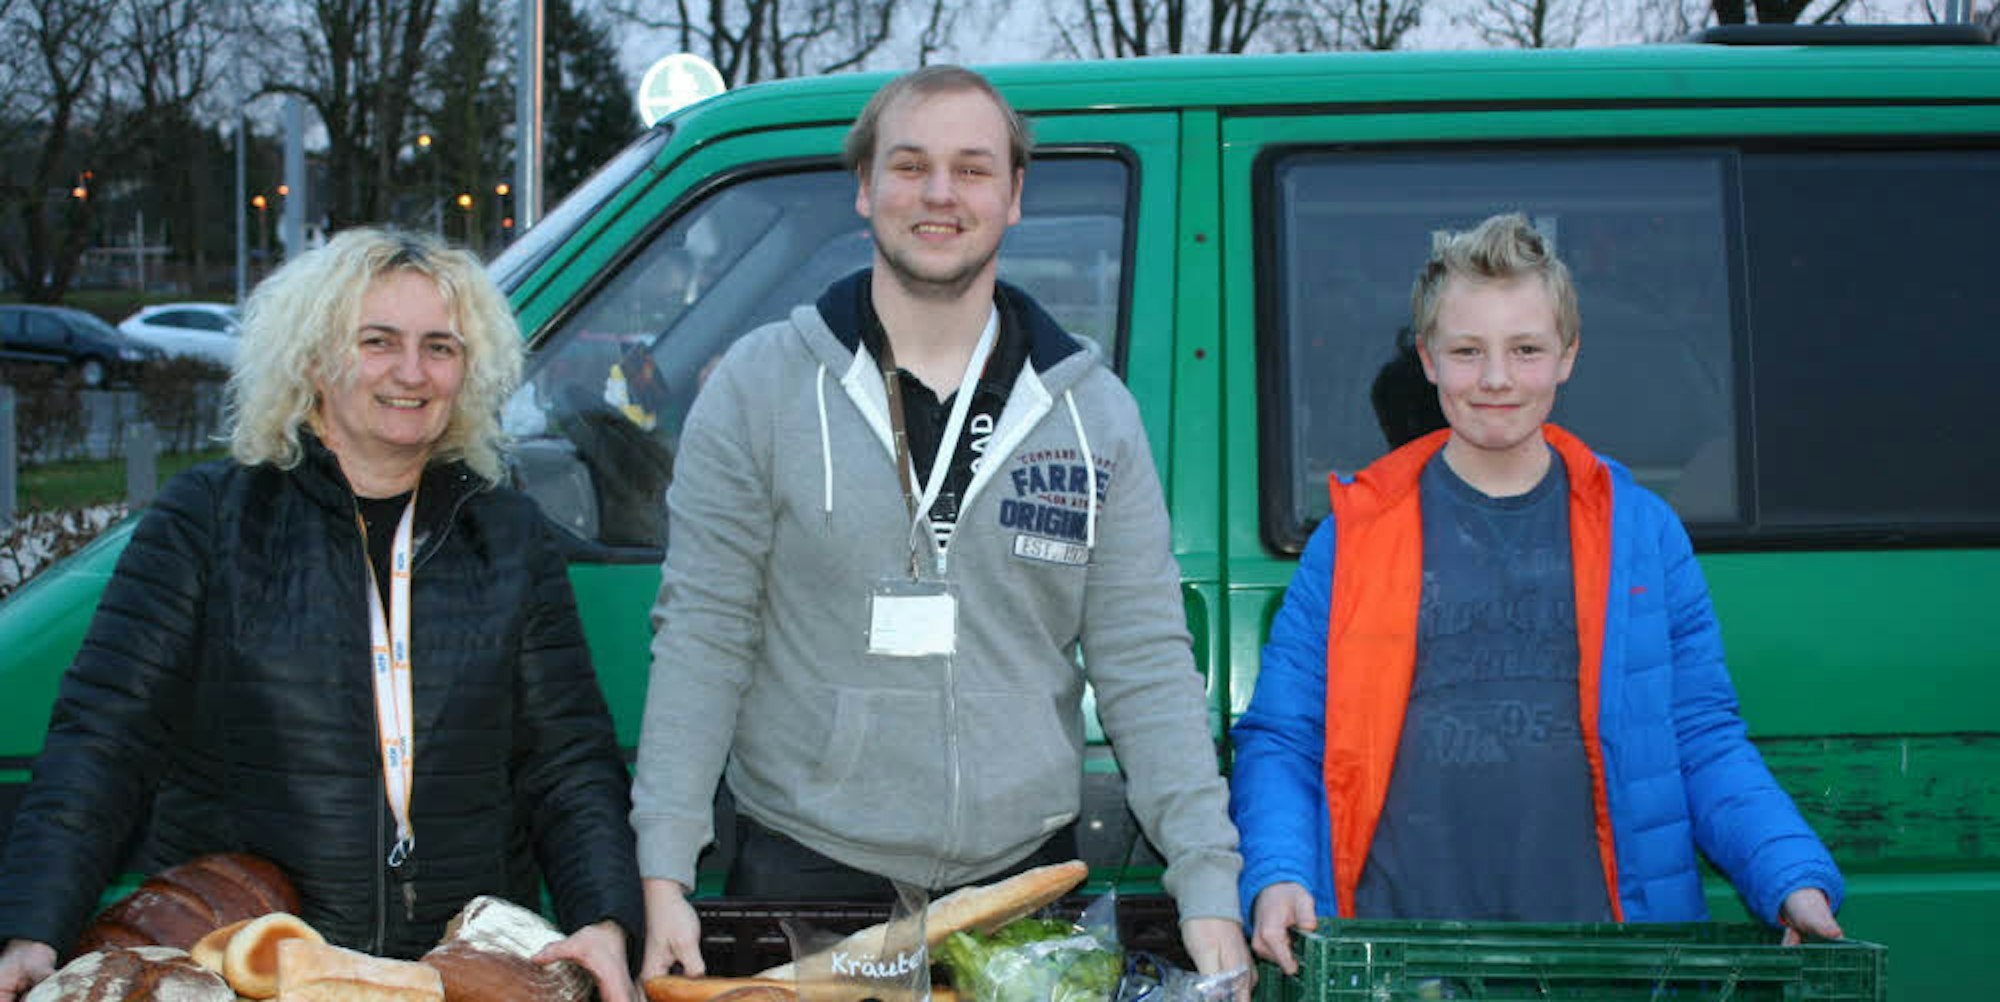 Unverkäufliche Lebensmittel holen die Helfer bei den Betrieben ab und verteilen sie. In der Mitte: Organisator Matthias Jühlen.